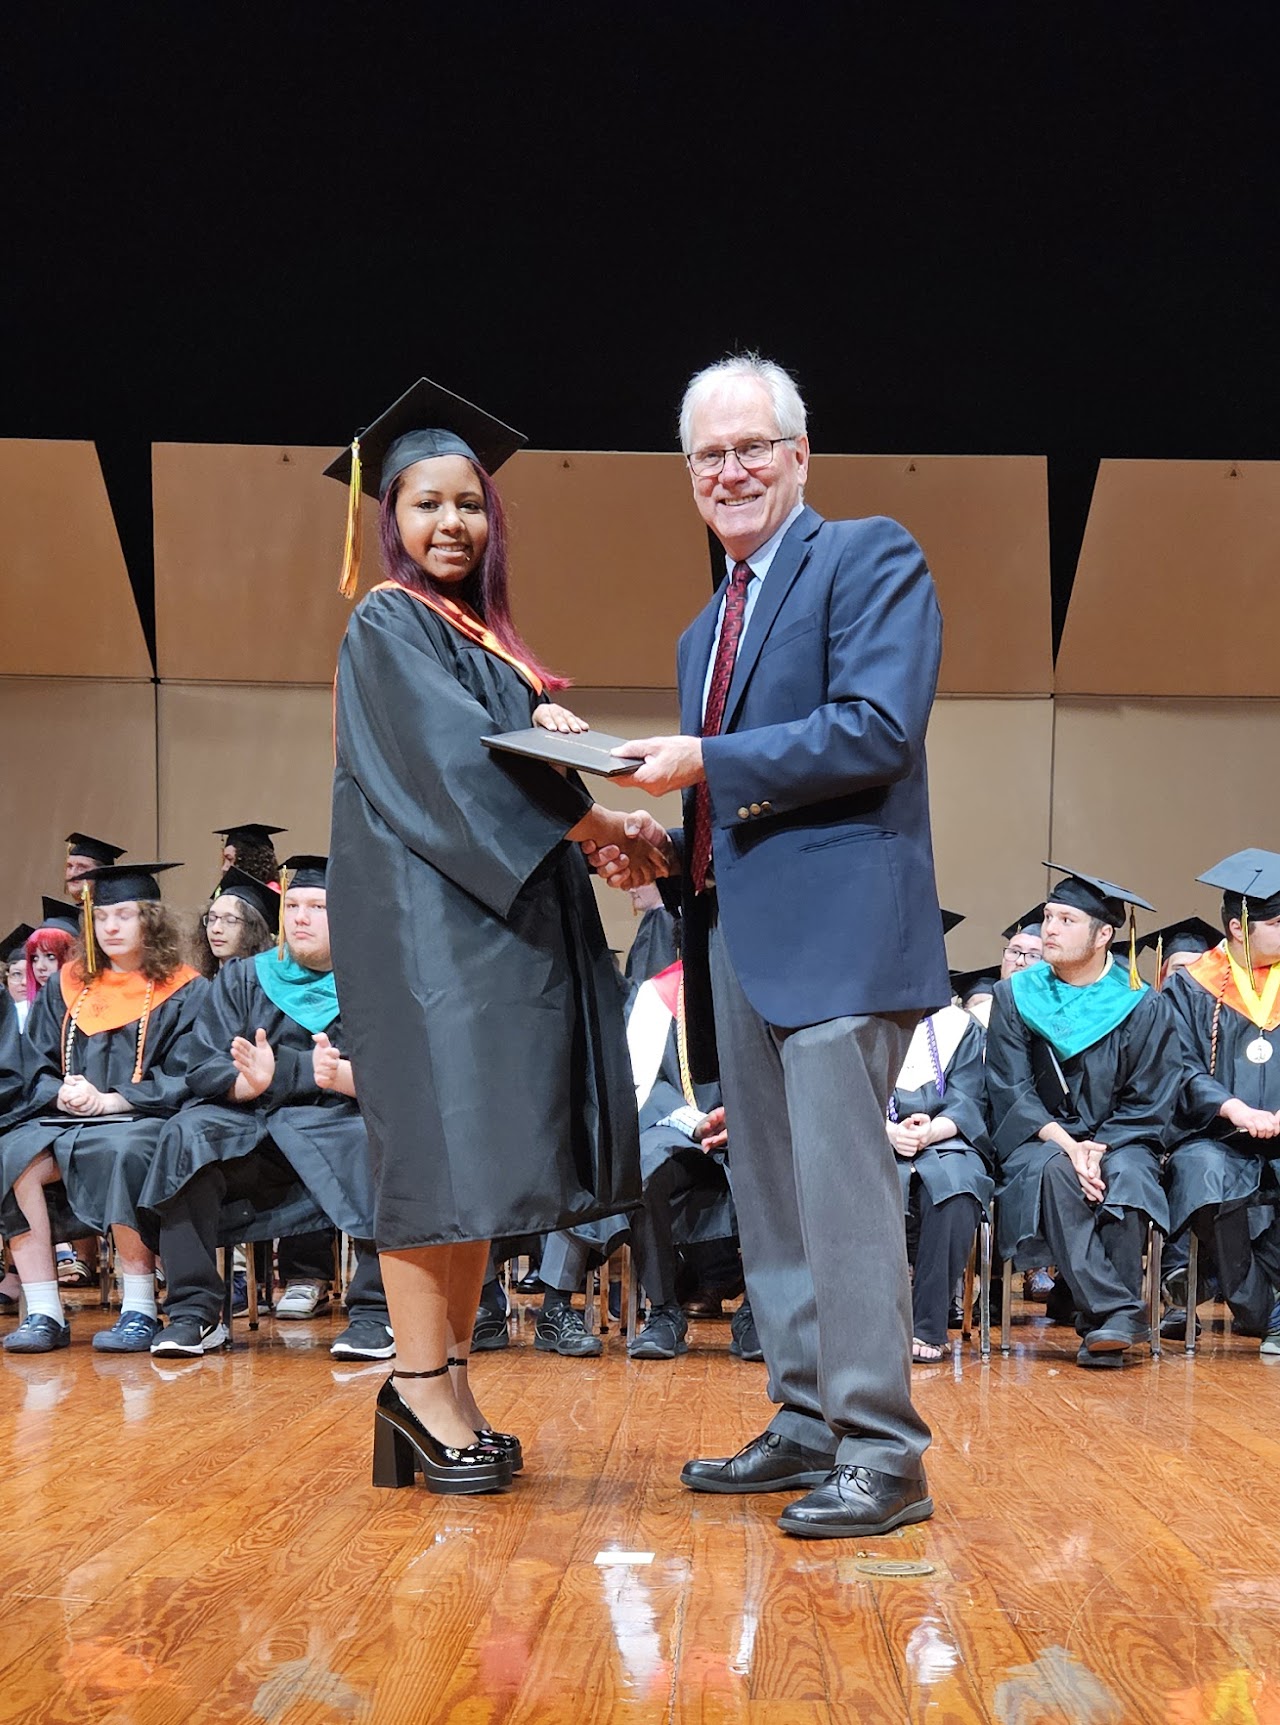 Student receiving diplomaStudent receiving diploma